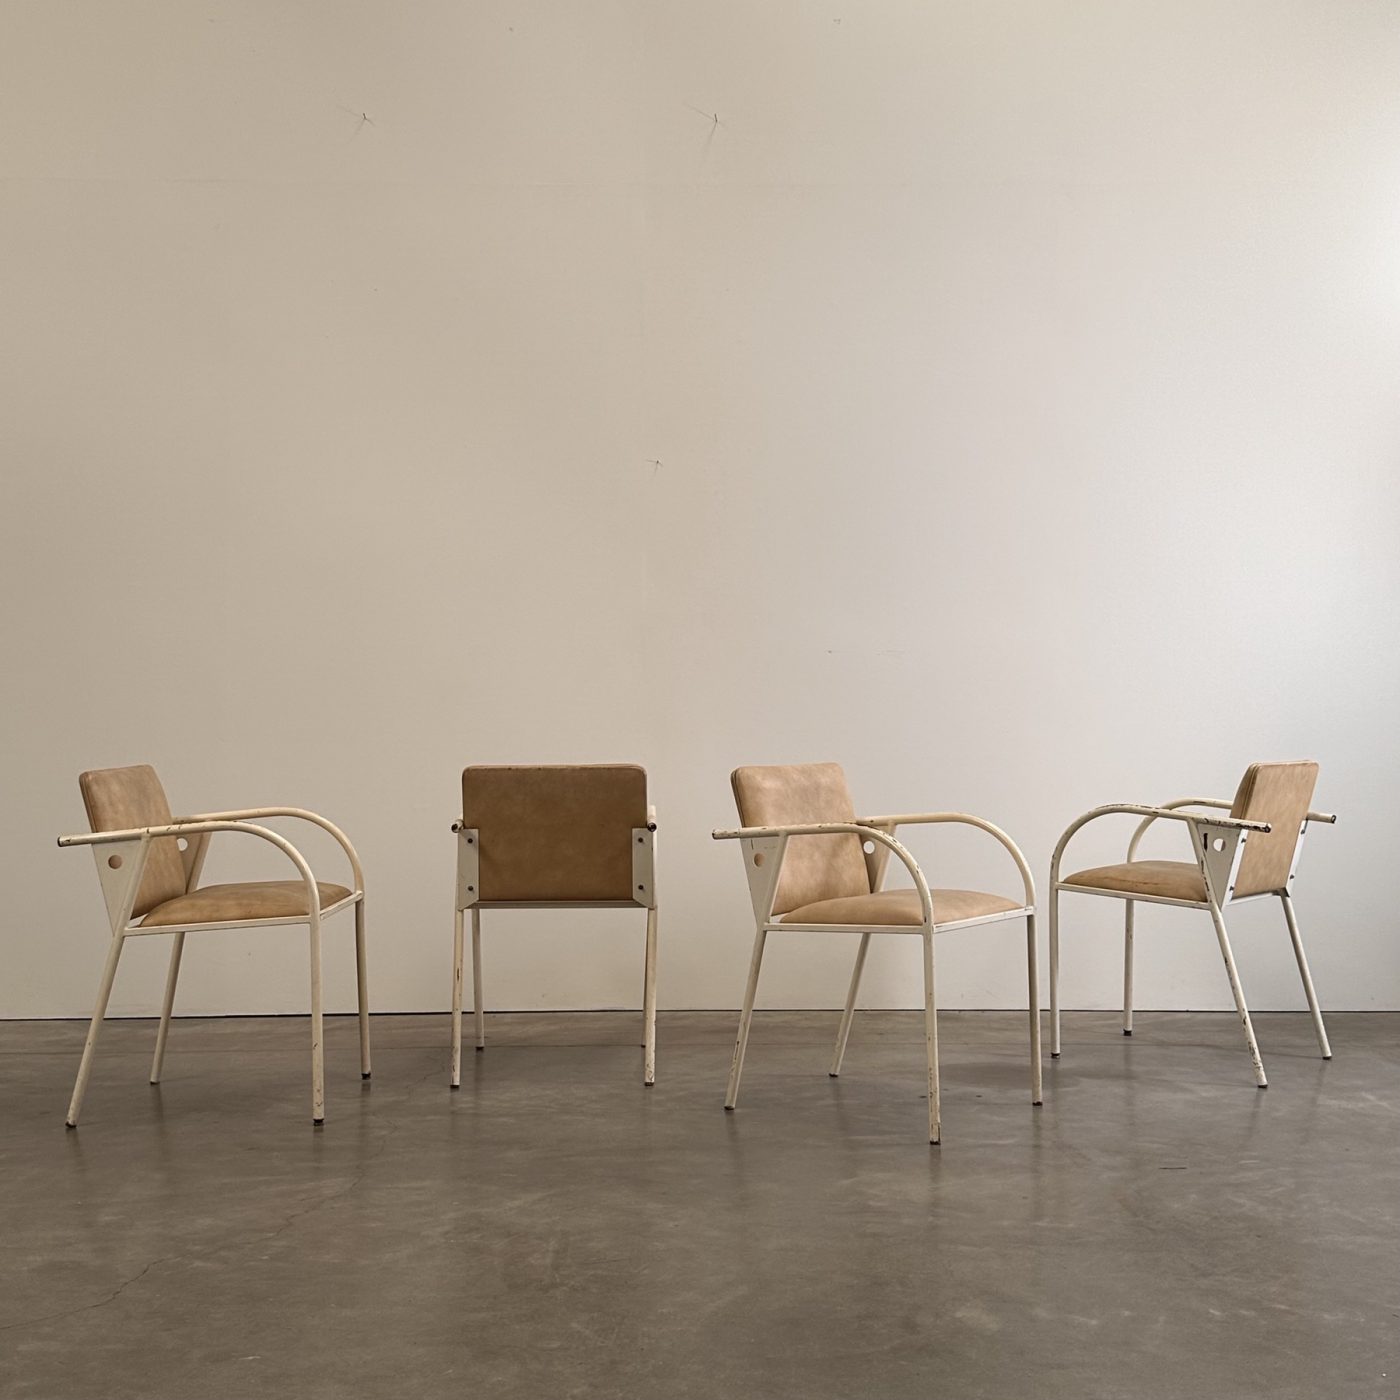 objet-vagabond-metal-armchairs0005